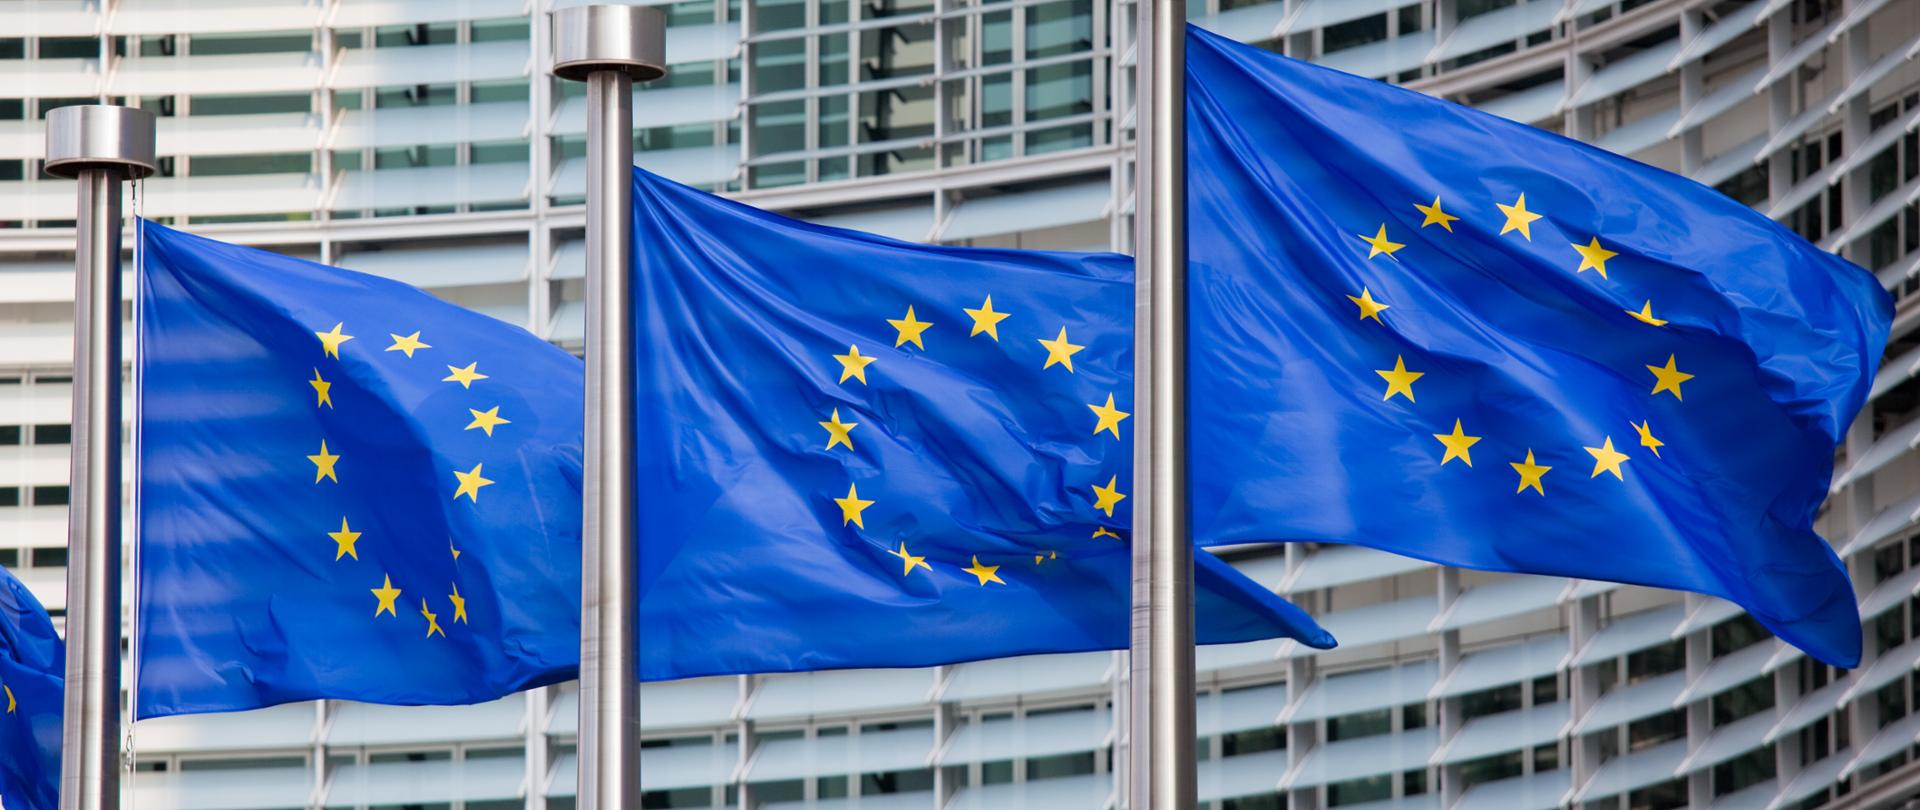 Zdjęcie w poziomie. Trzy flagi Unii Europejskiej w rzędzie na tle parlamentu Europejskiego